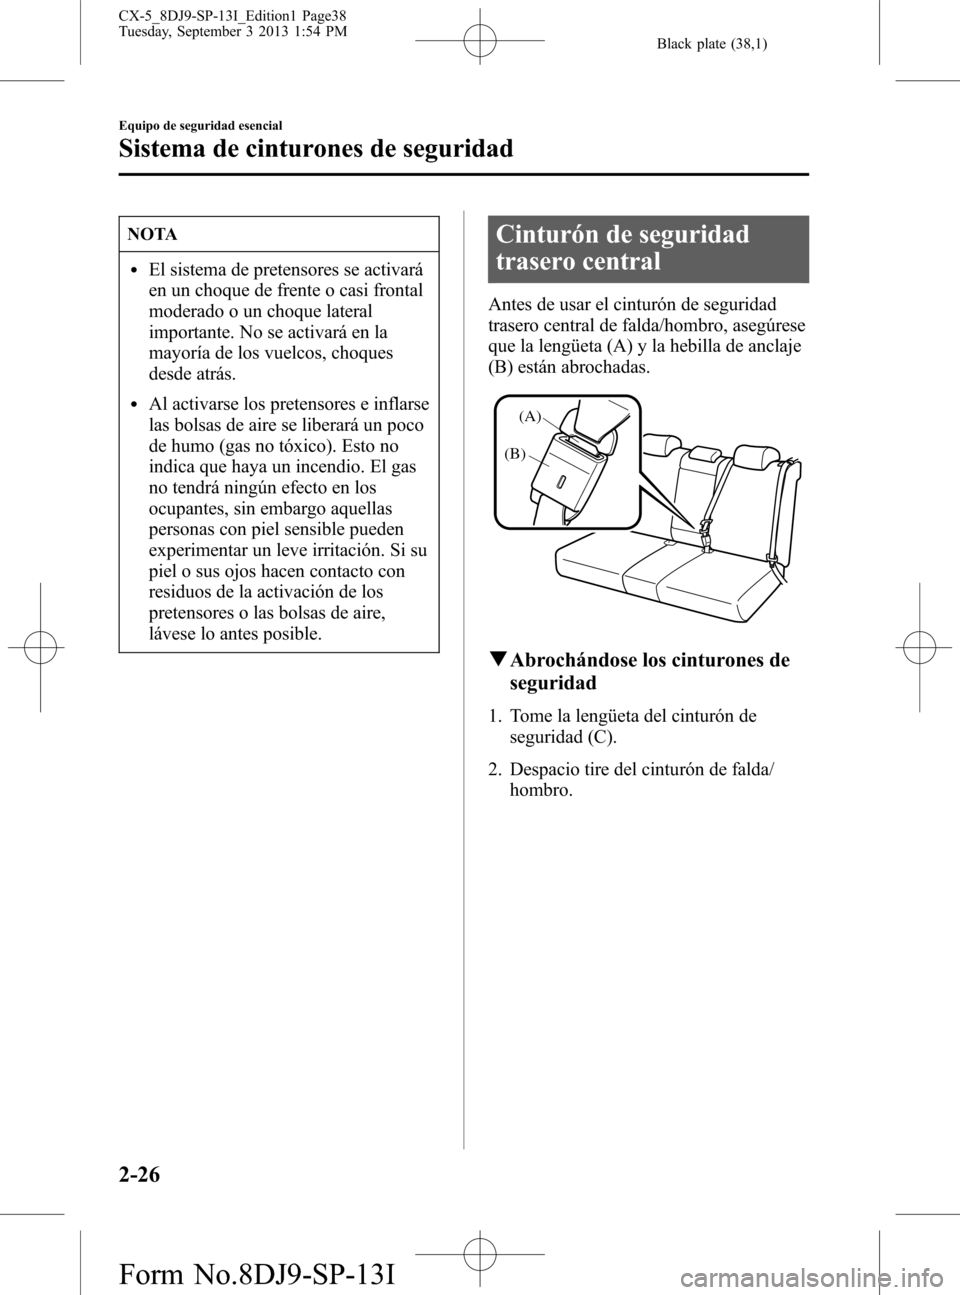 MAZDA MODEL CX-5 2014  Manual del propietario (in Spanish) Black plate (38,1)
NOTA
lEl sistema de pretensores se activará
en un choque de frente o casi frontal
moderado o un choque lateral
importante. No se activará en la
mayoría de los vuelcos, choques
de